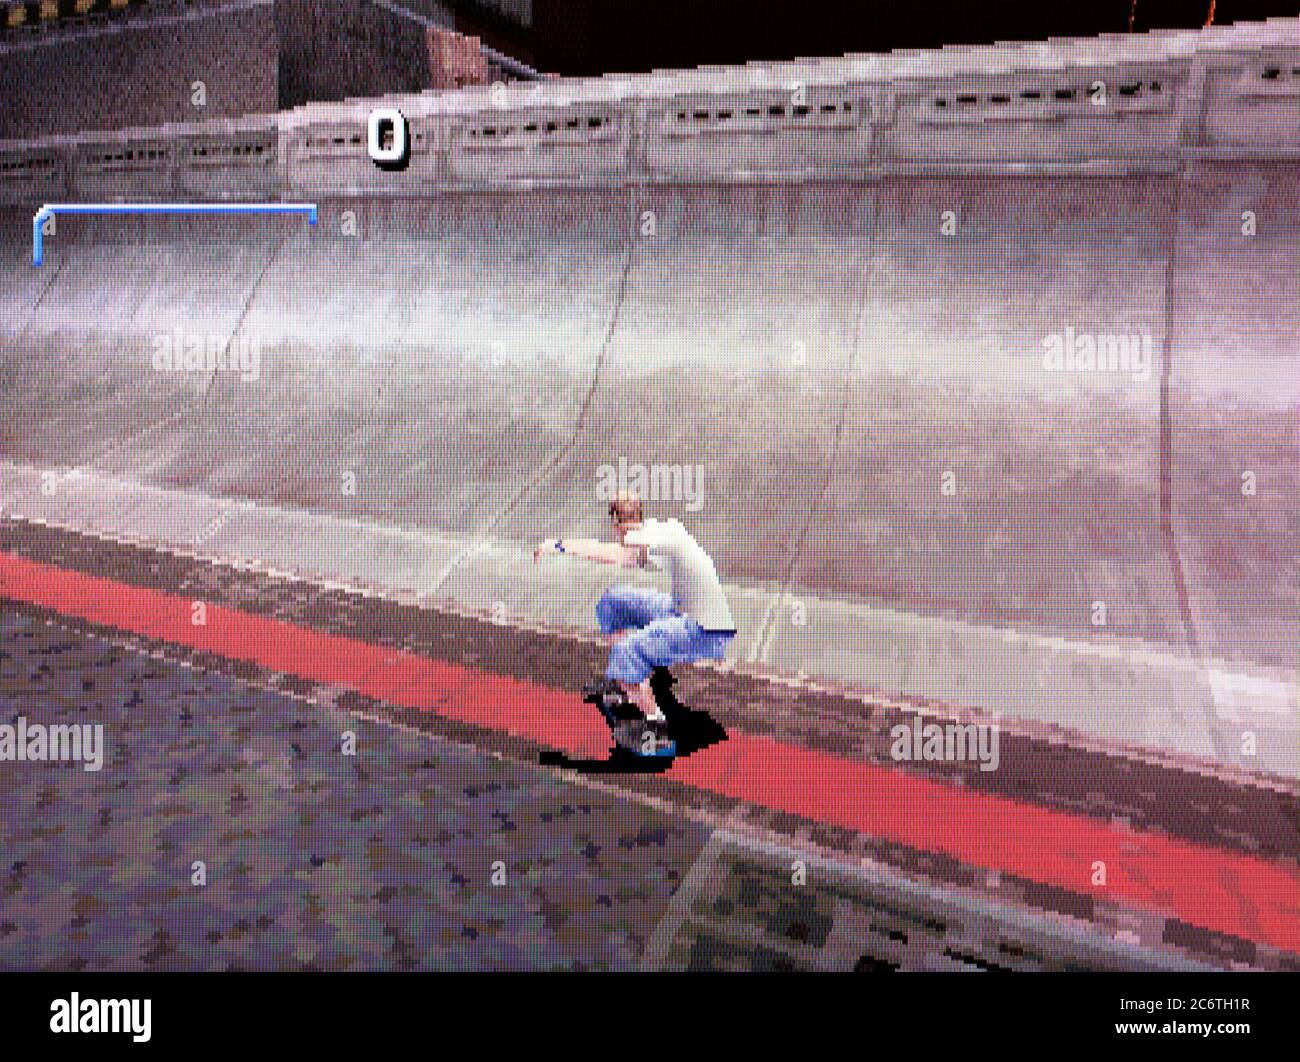 Tony Hawk's Pro Skater -- Gameplay (PS1) 